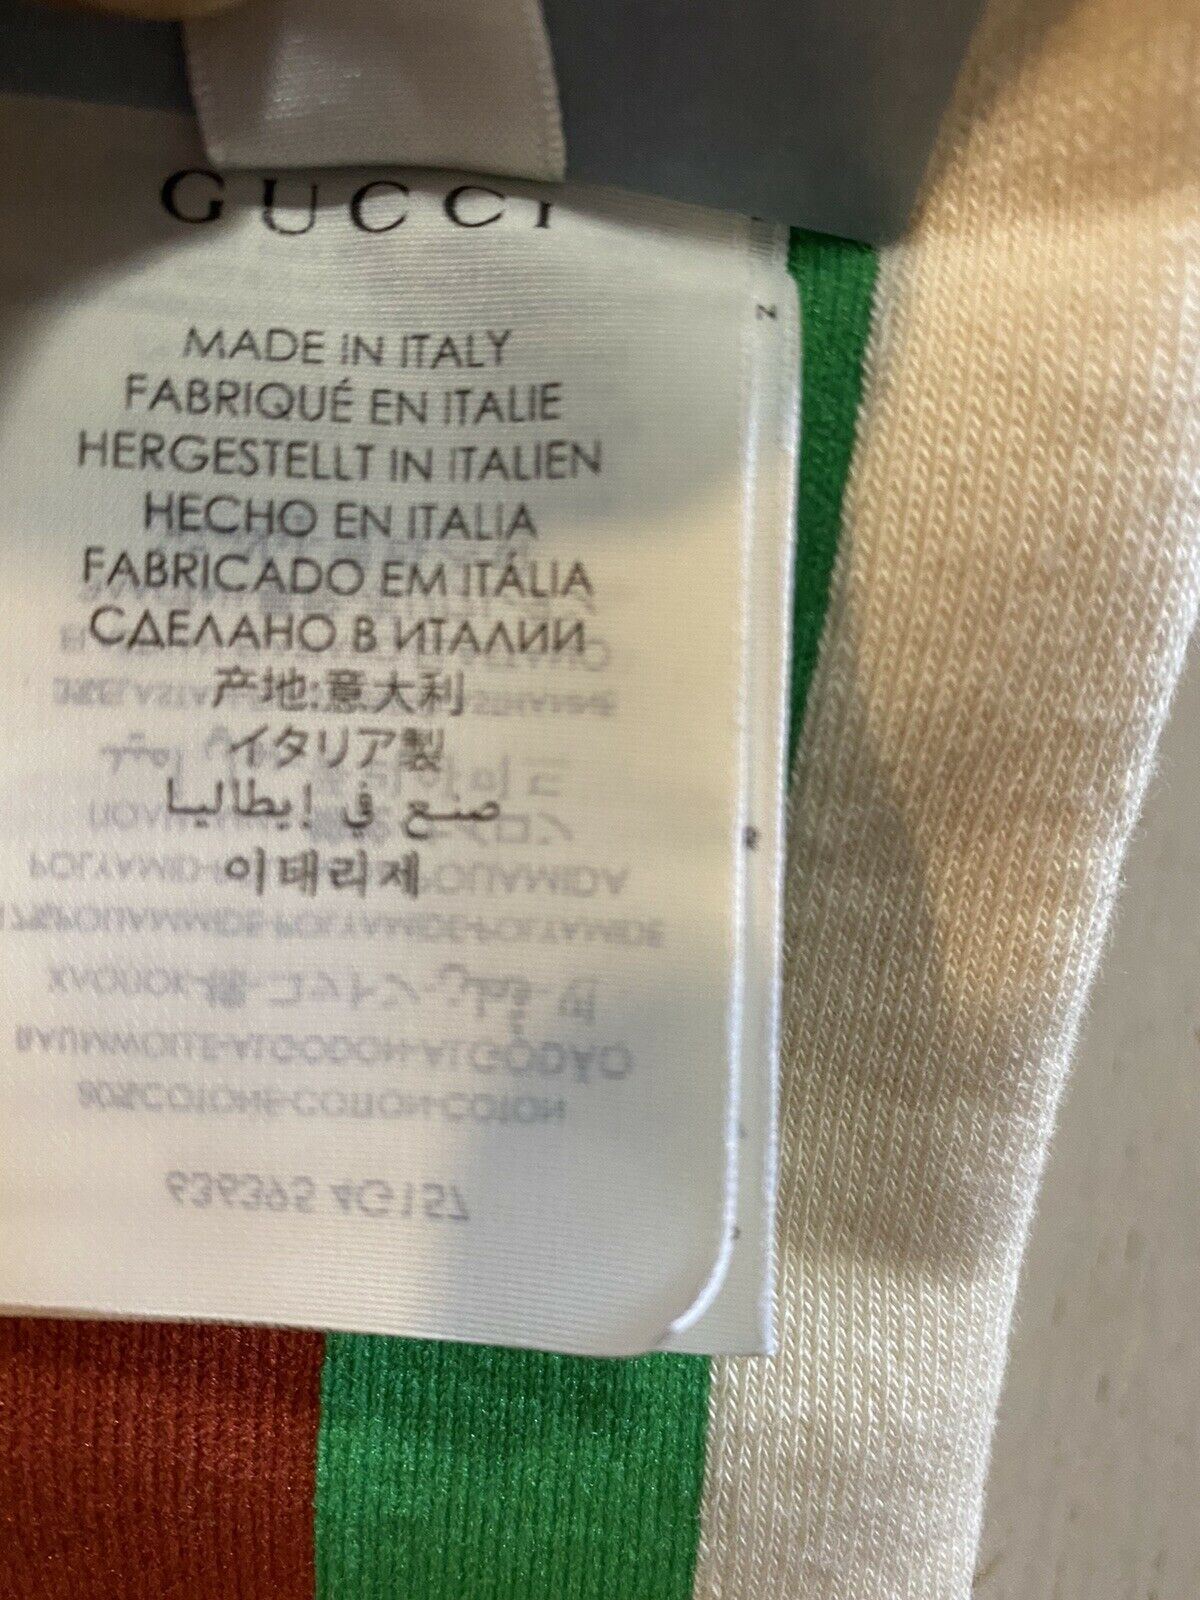 Носки NWT Gucci NOT FAKE с полосками красного/зеленого/слоновой кости, размер M, Италия